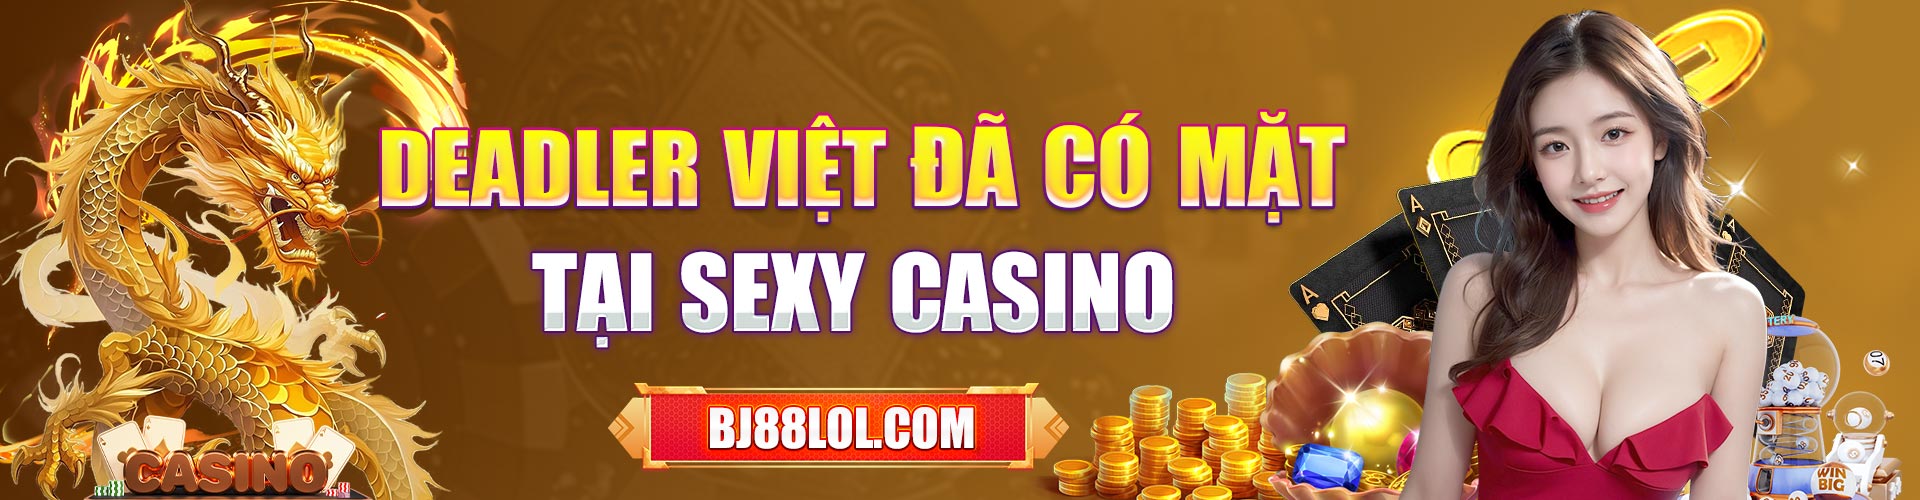 dealer việt đã có mặt tại sexy casino